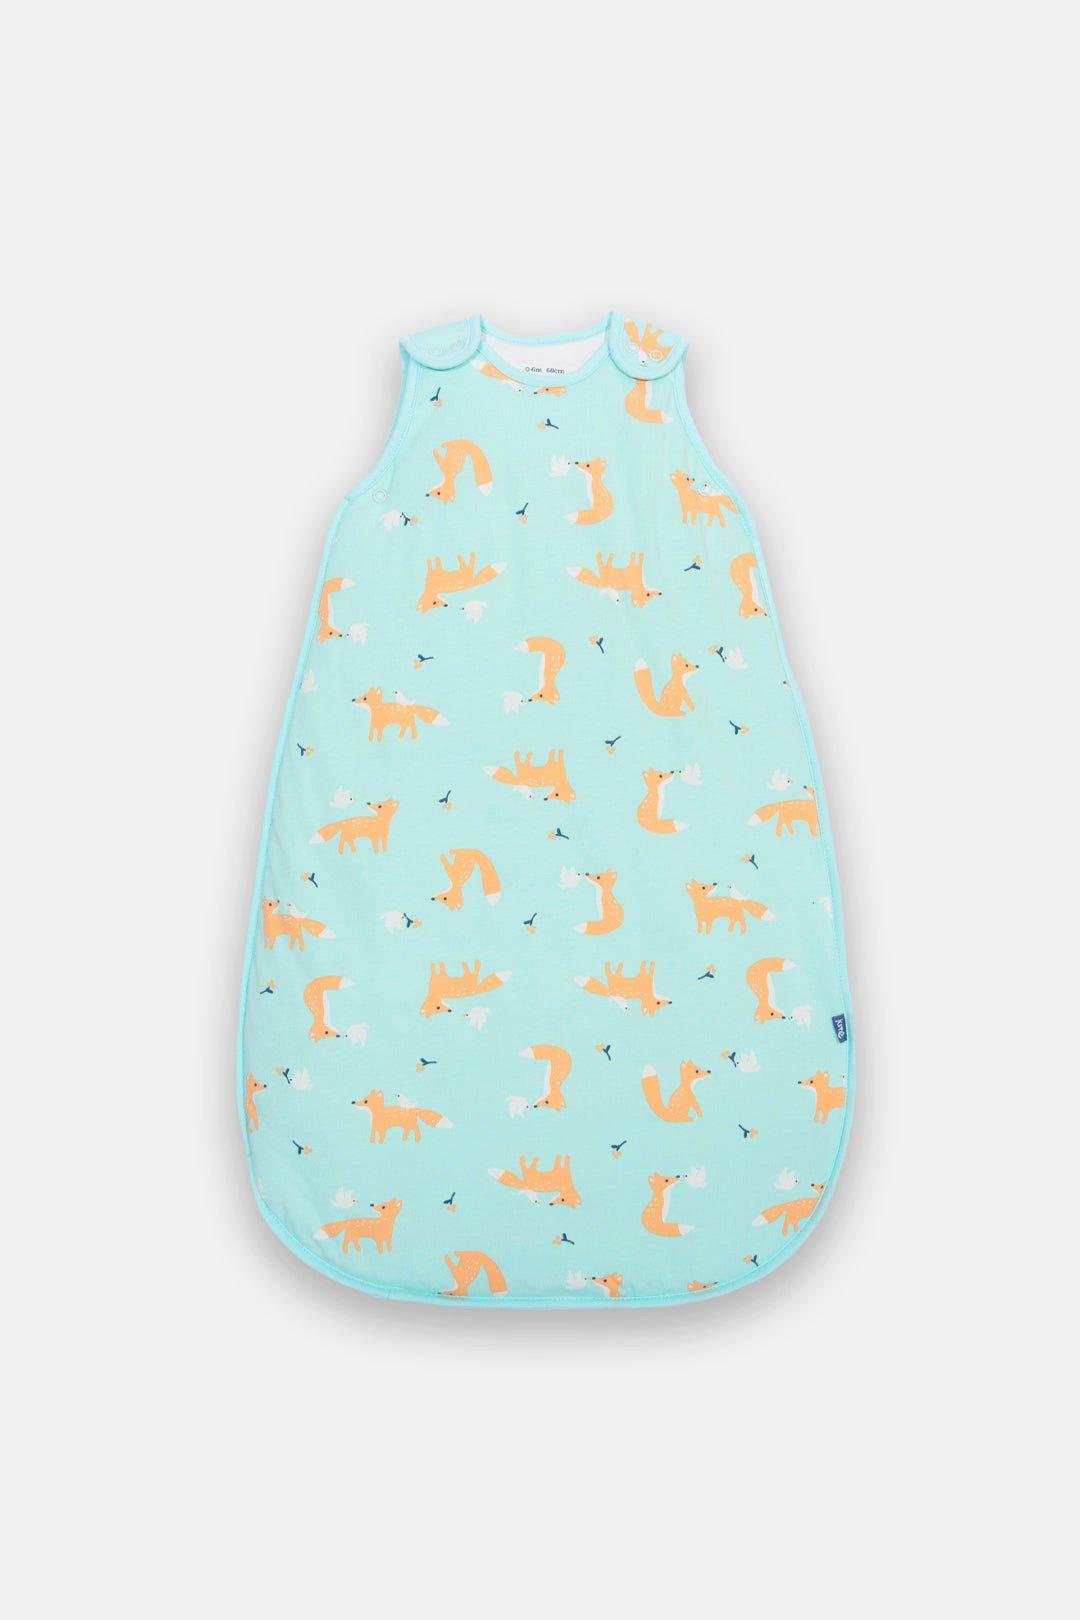 Baby Fox And Dove Sleep Bag